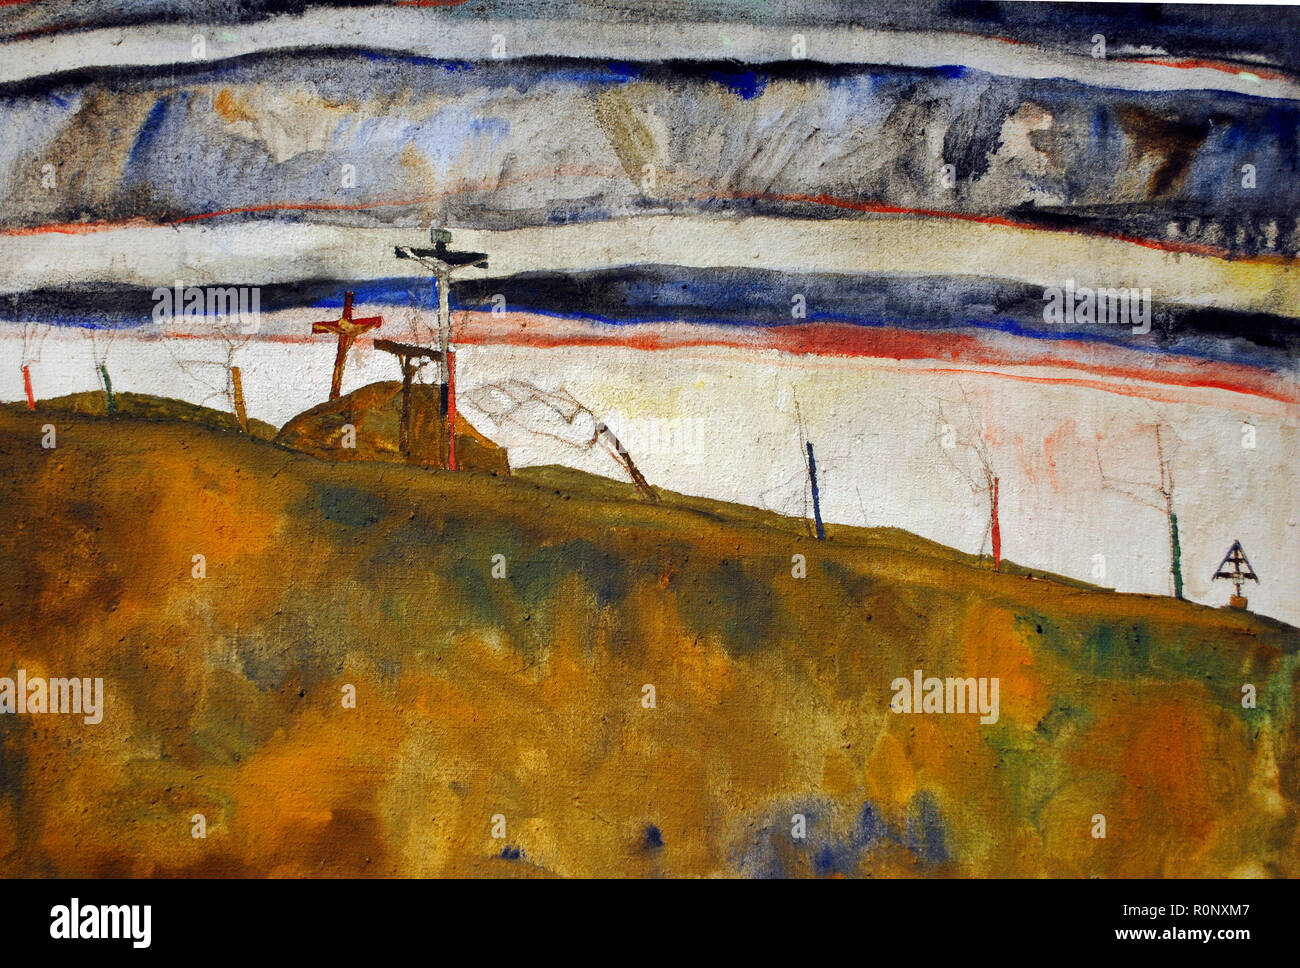 Egon Schiele (Tulln, 1890-Viena, 1918). Pintor expresionista austríaco. Monte Calvario, 1912. Lápiz y gouache óleo sobre lienzo. Museo Leopold. Viena, Austria. Foto de stock